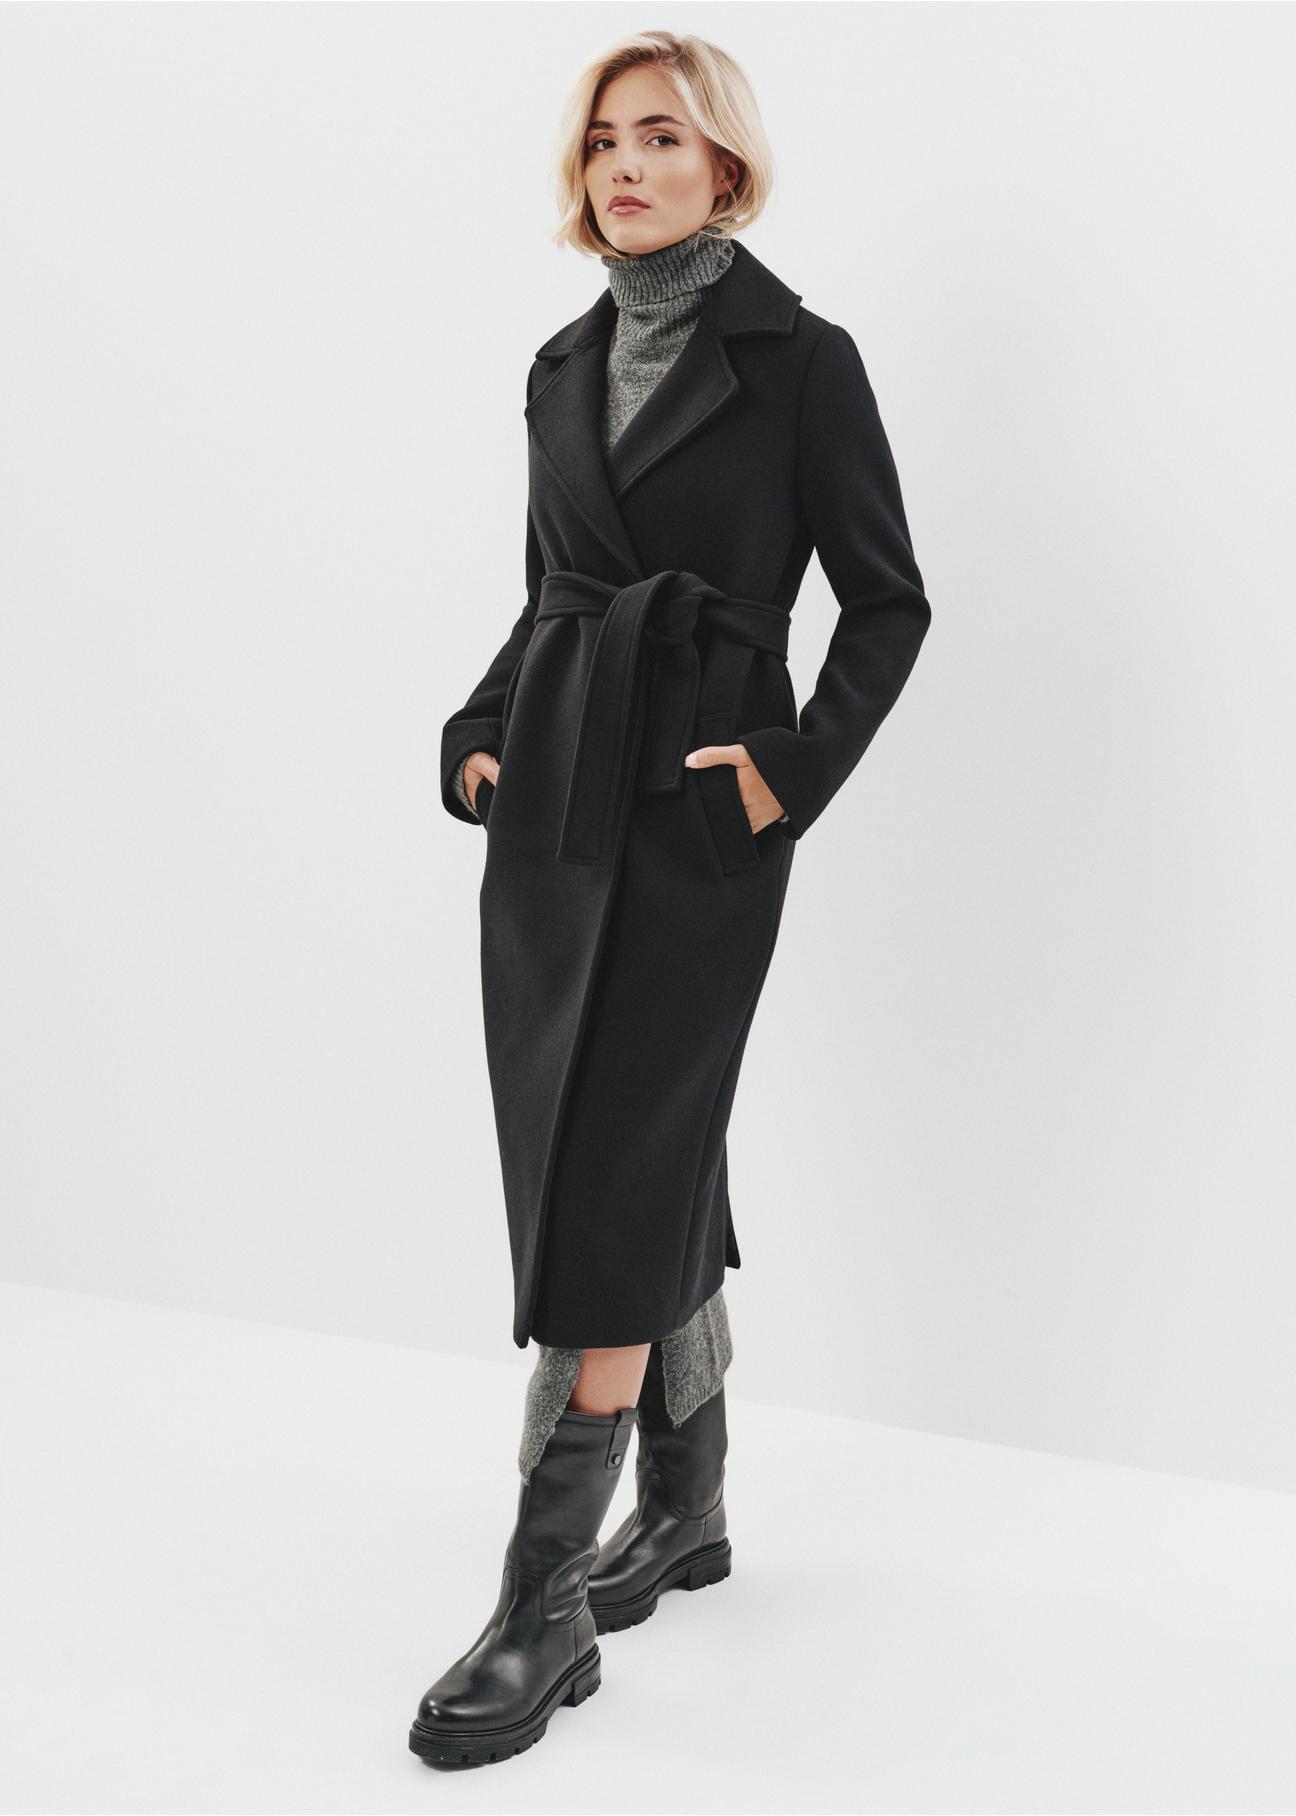 Czarny długi płaszcz damski PLADT-0048-99(Z23)